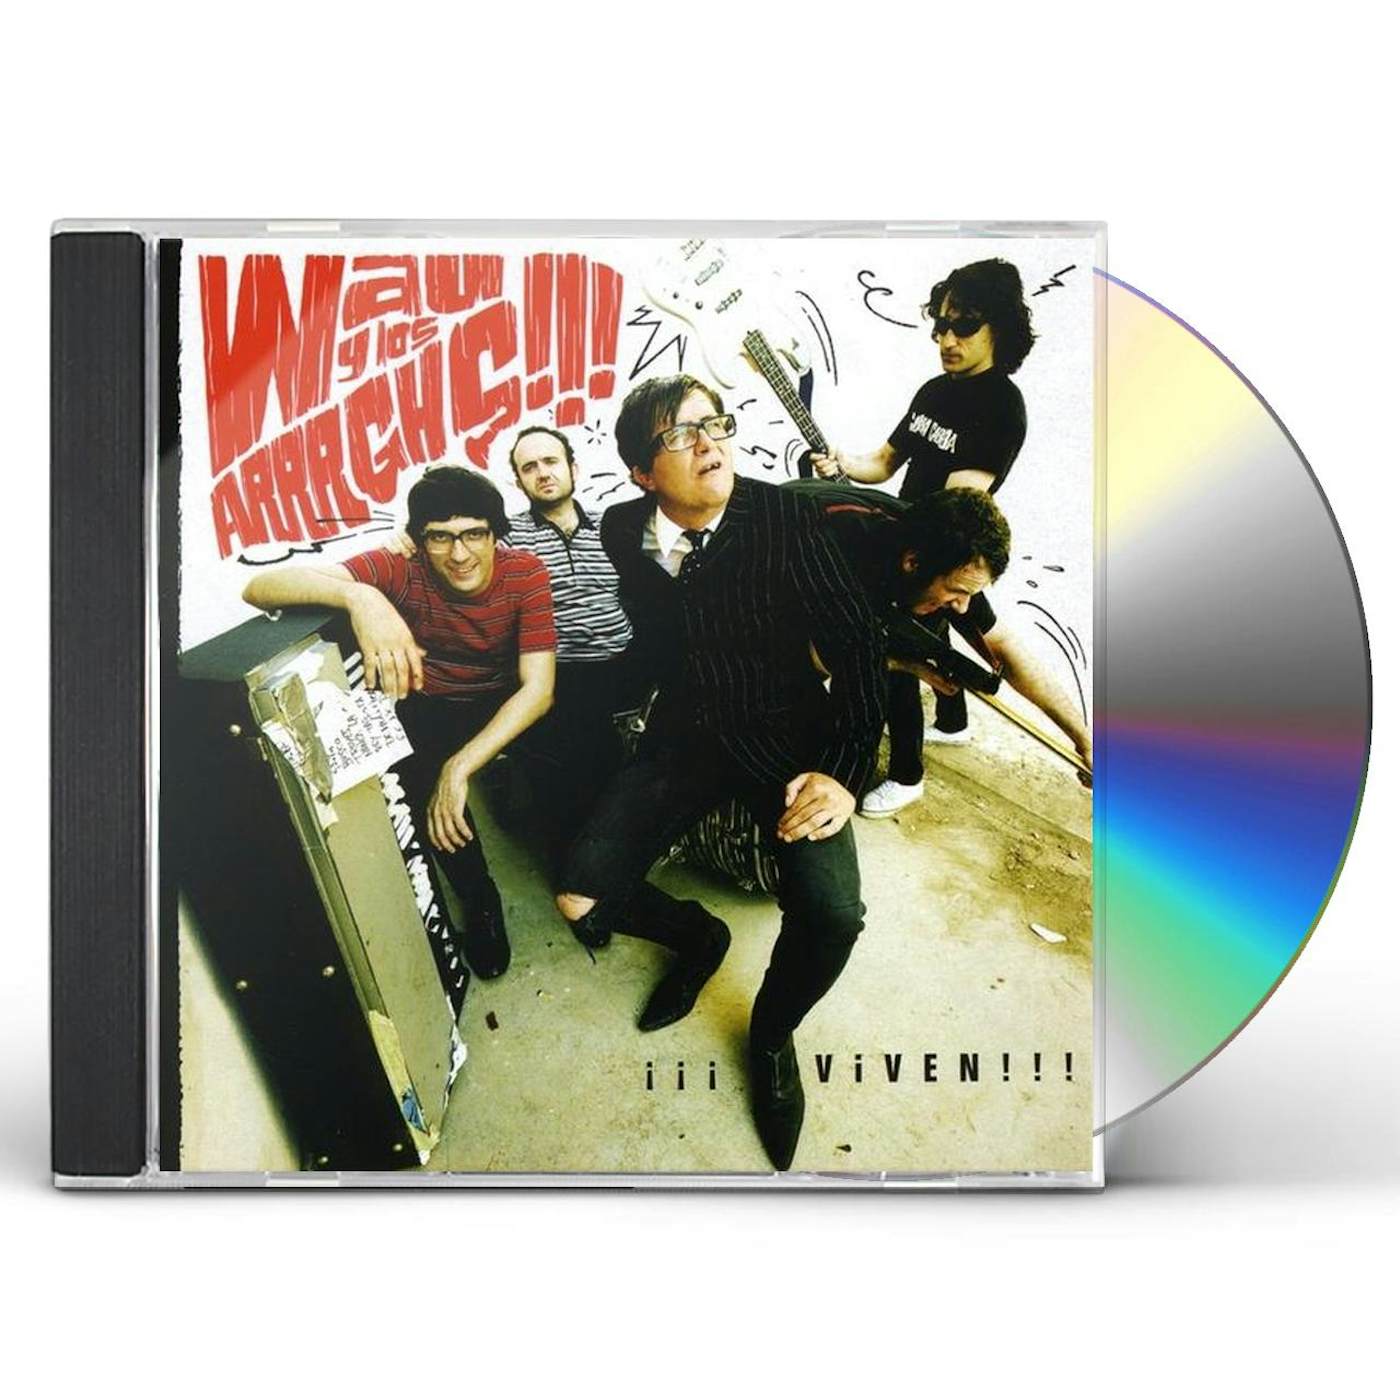 Wau y Los Arrrghs VIVEN CD